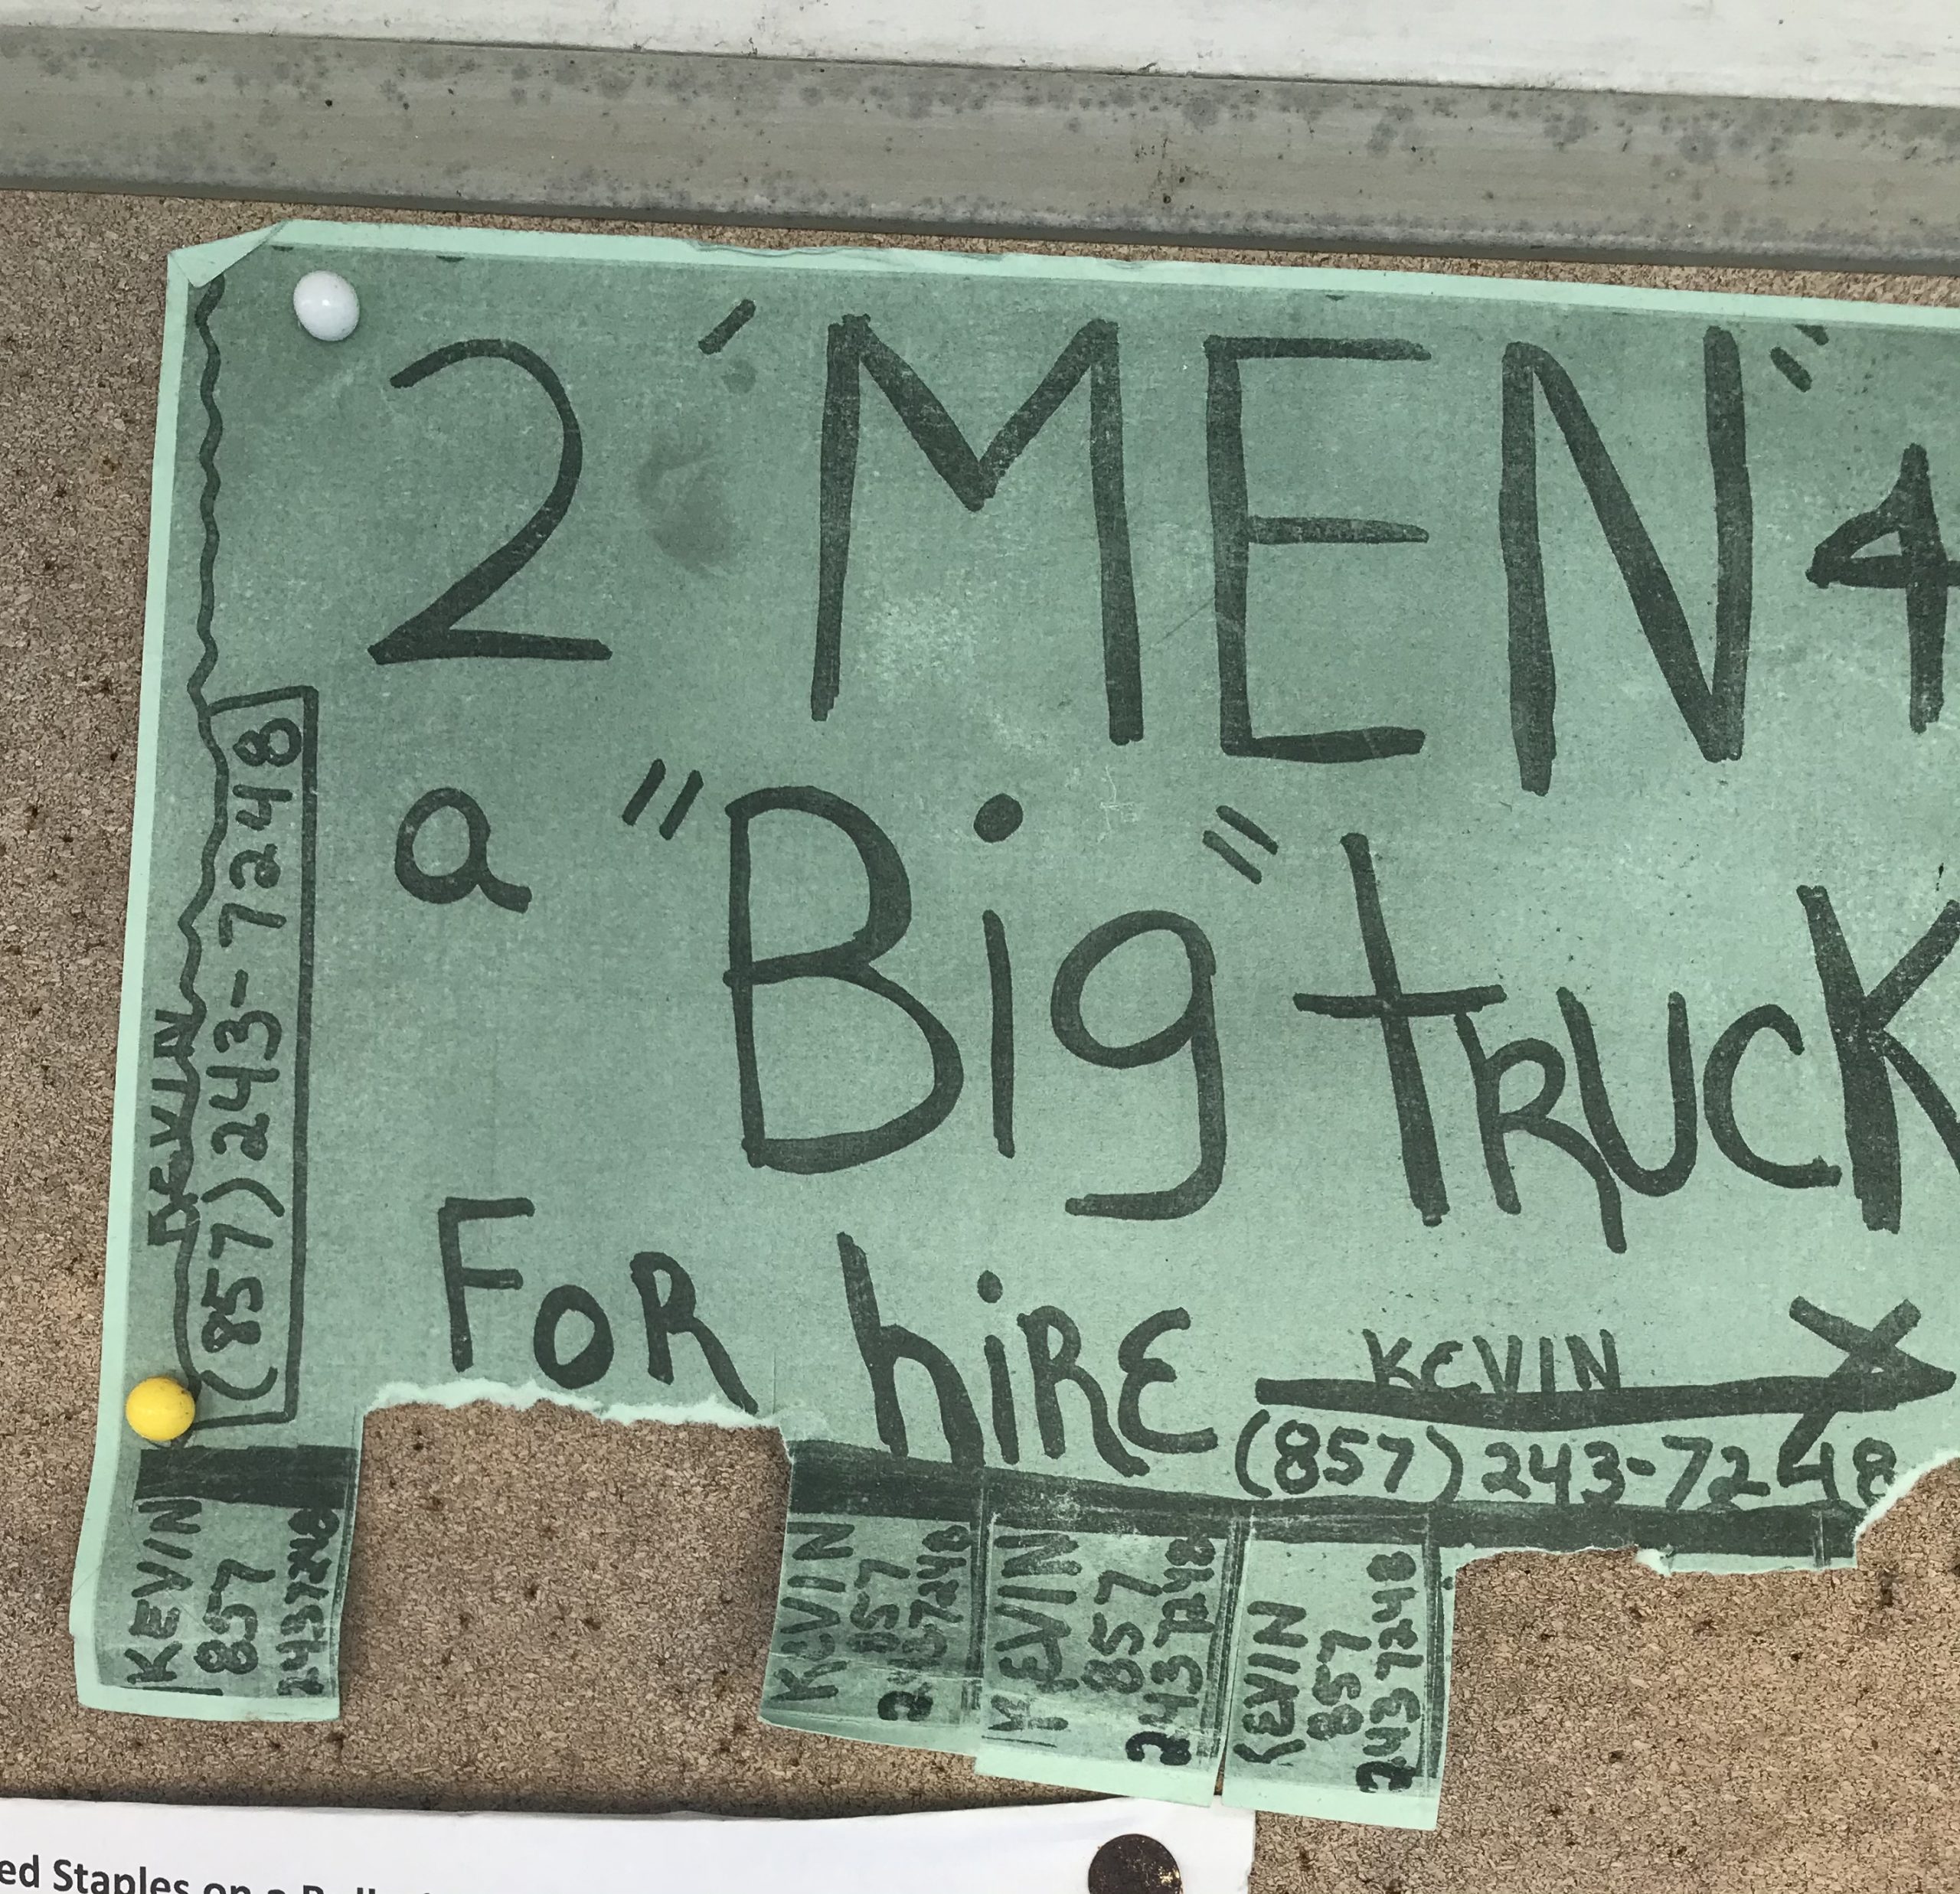 2 men & a truck sign